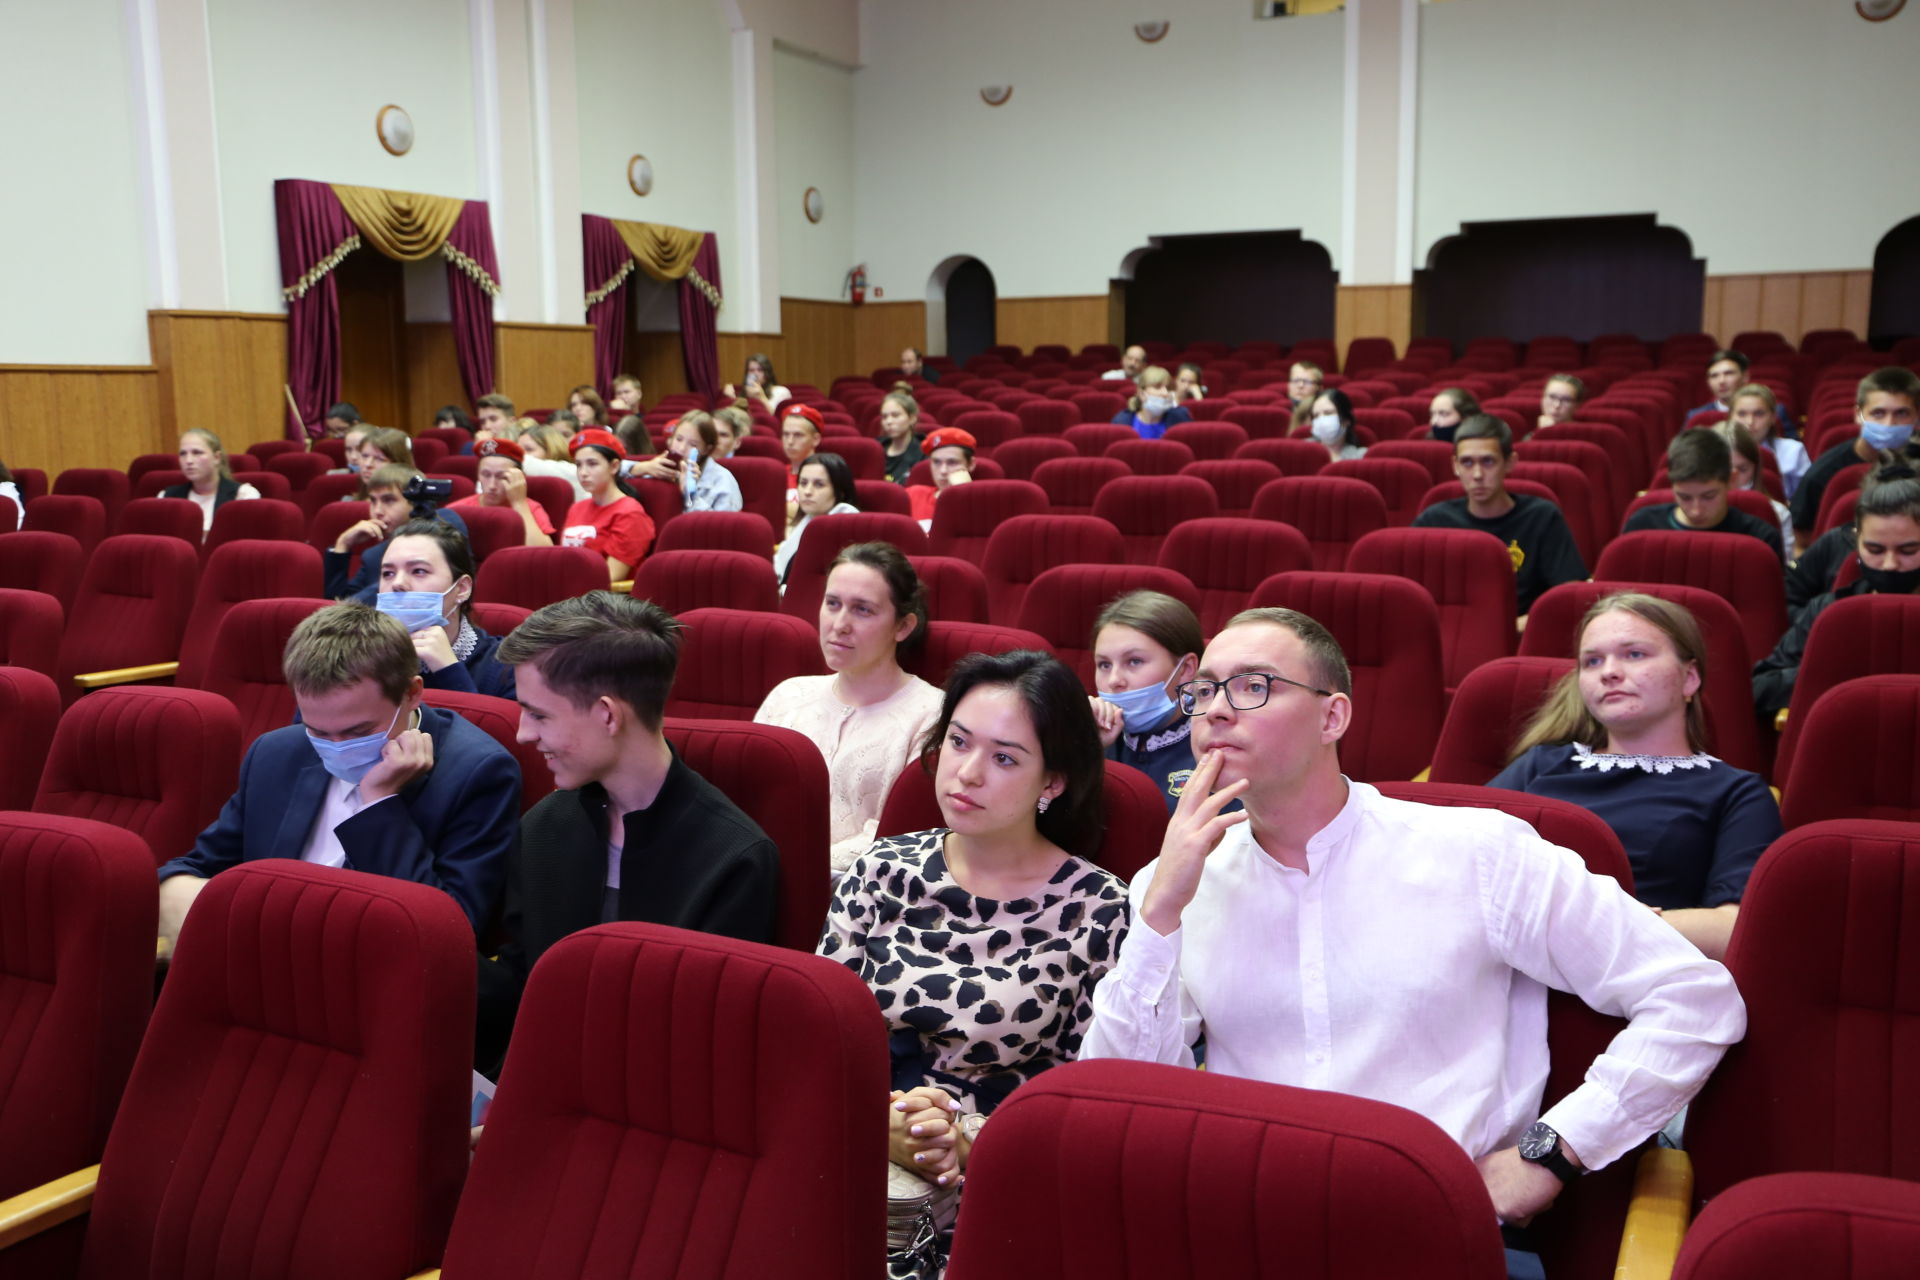 Алексеевское стало пунктом роуд-тура «Время молодых»